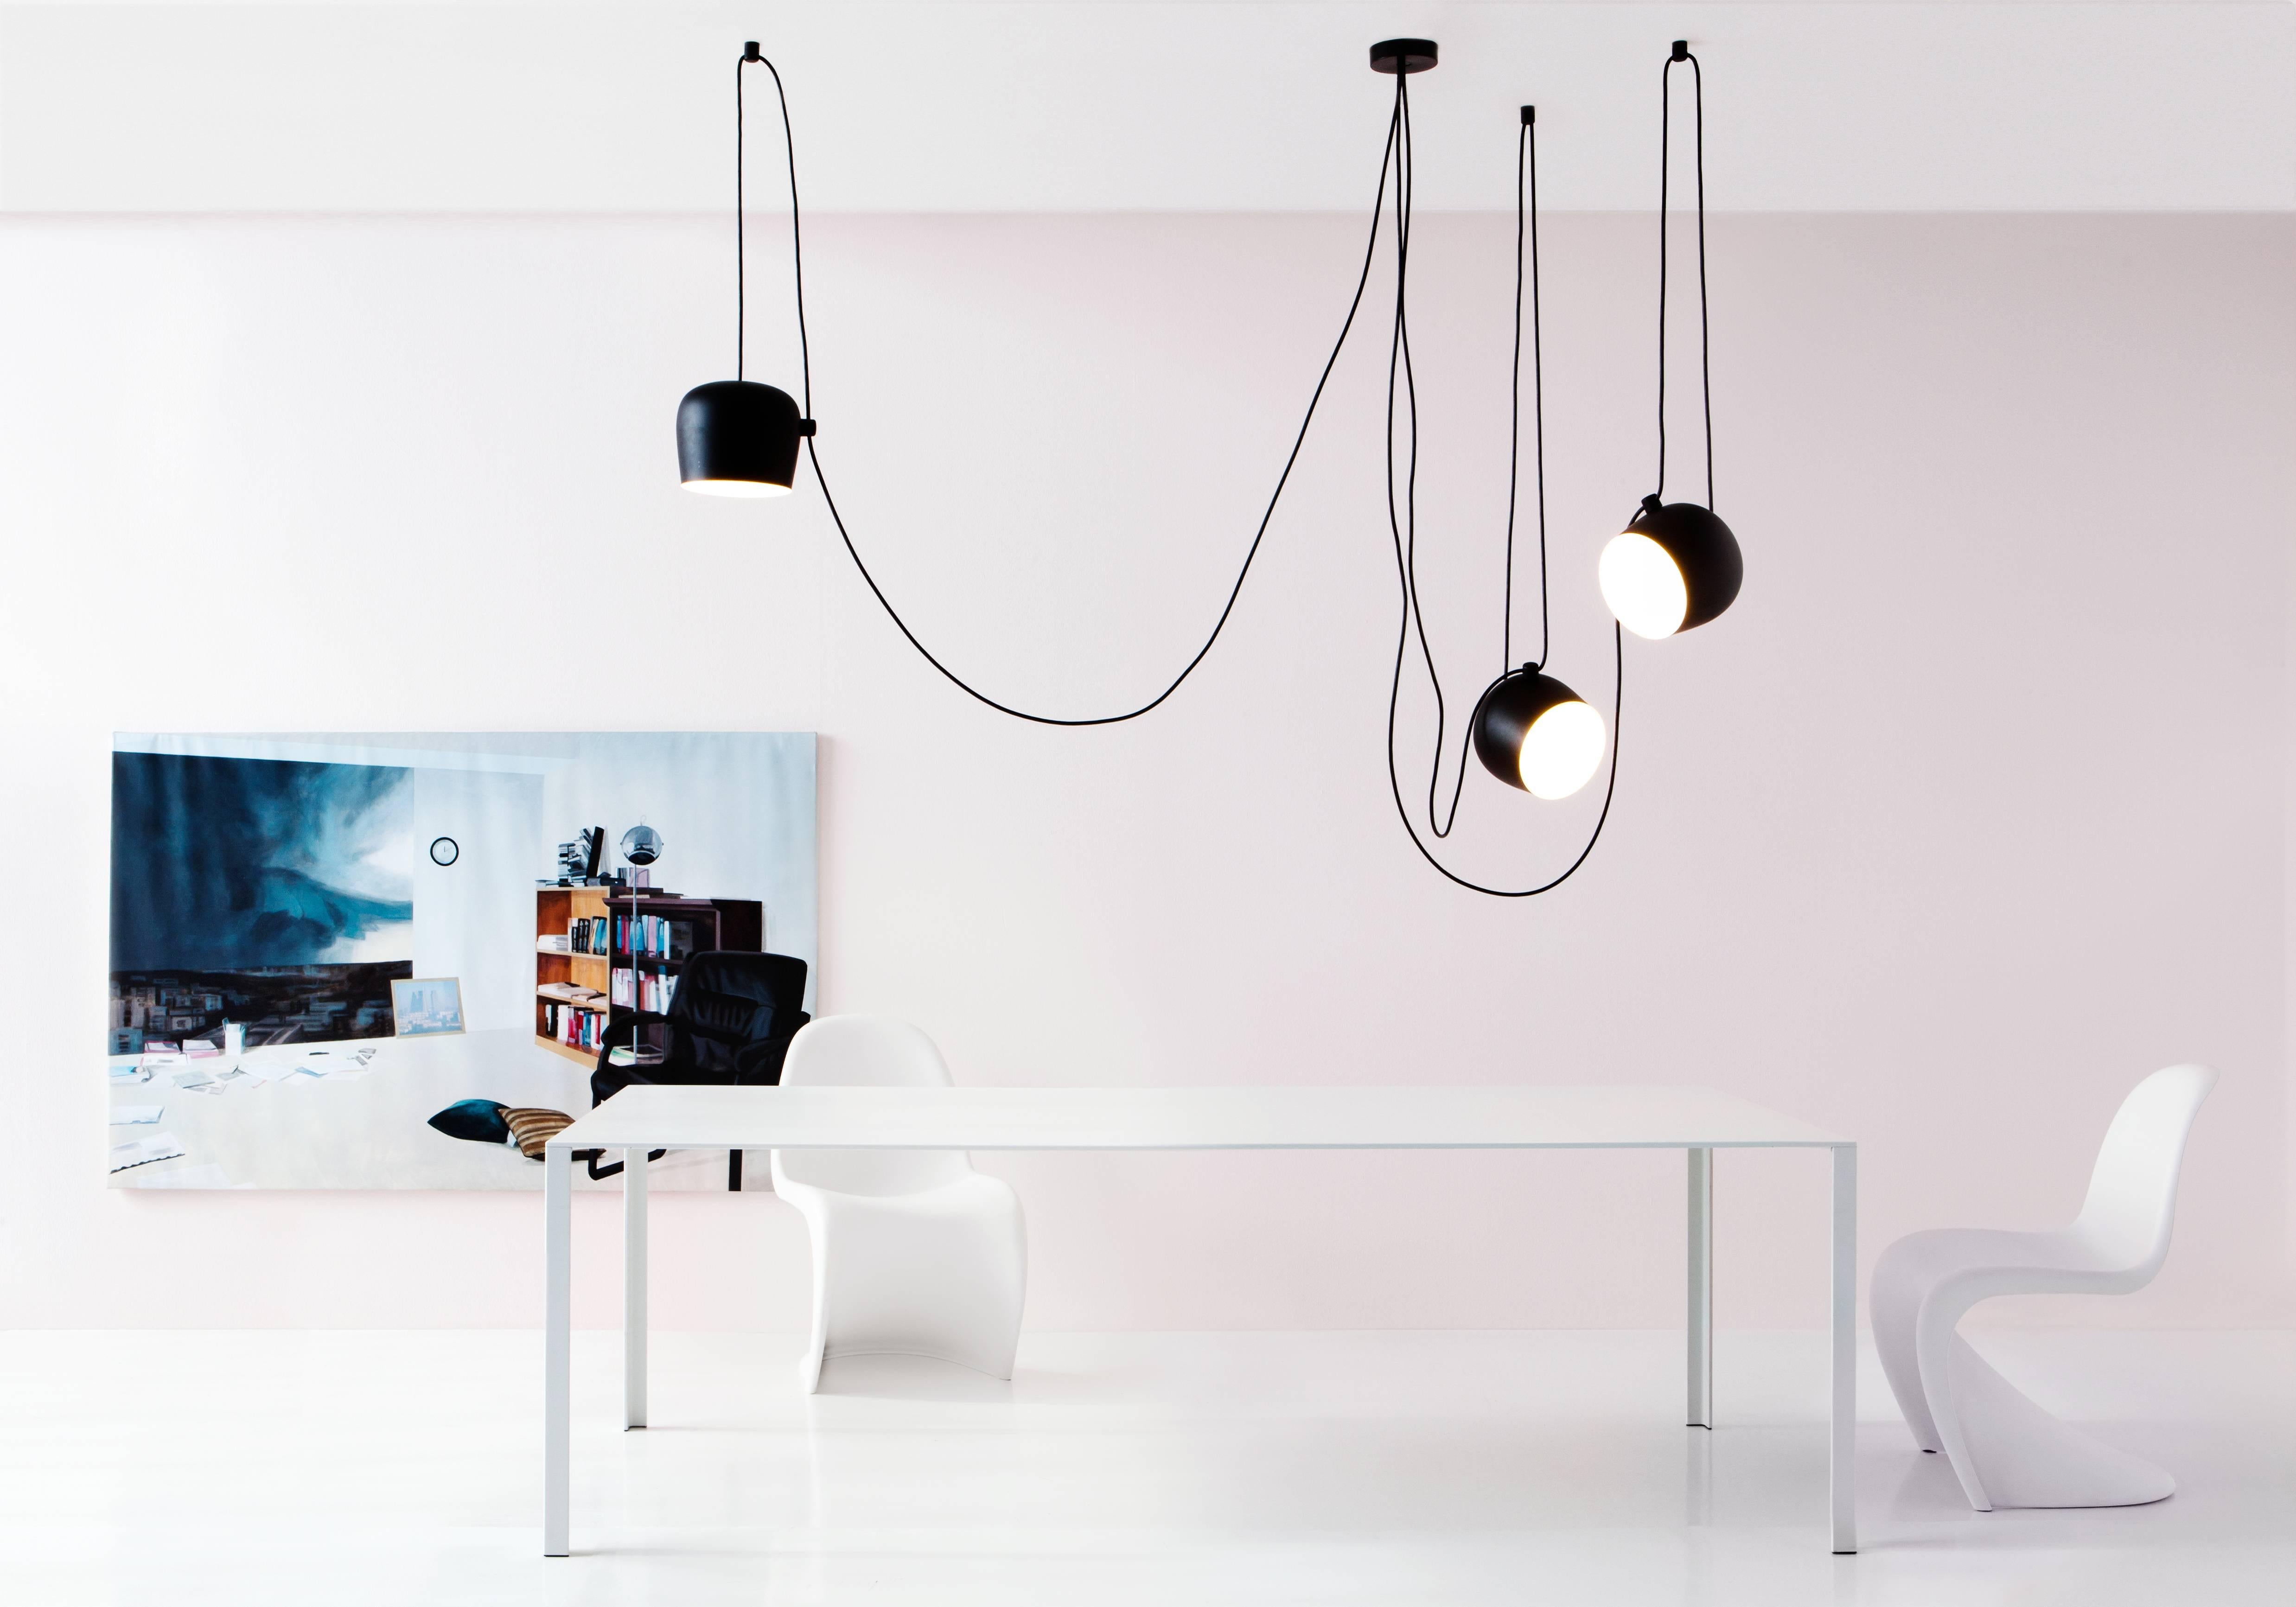 FLOS Aim Petit luminaire noir à trois lampes avec baldaquin par Ronan & Erwan Bouroullec

Créé par les frères Bouroullec en 2010, le plafonnier AIM est un design dépouillé jusqu'à son essence la plus basique et la plus belle. Cette forme innovante